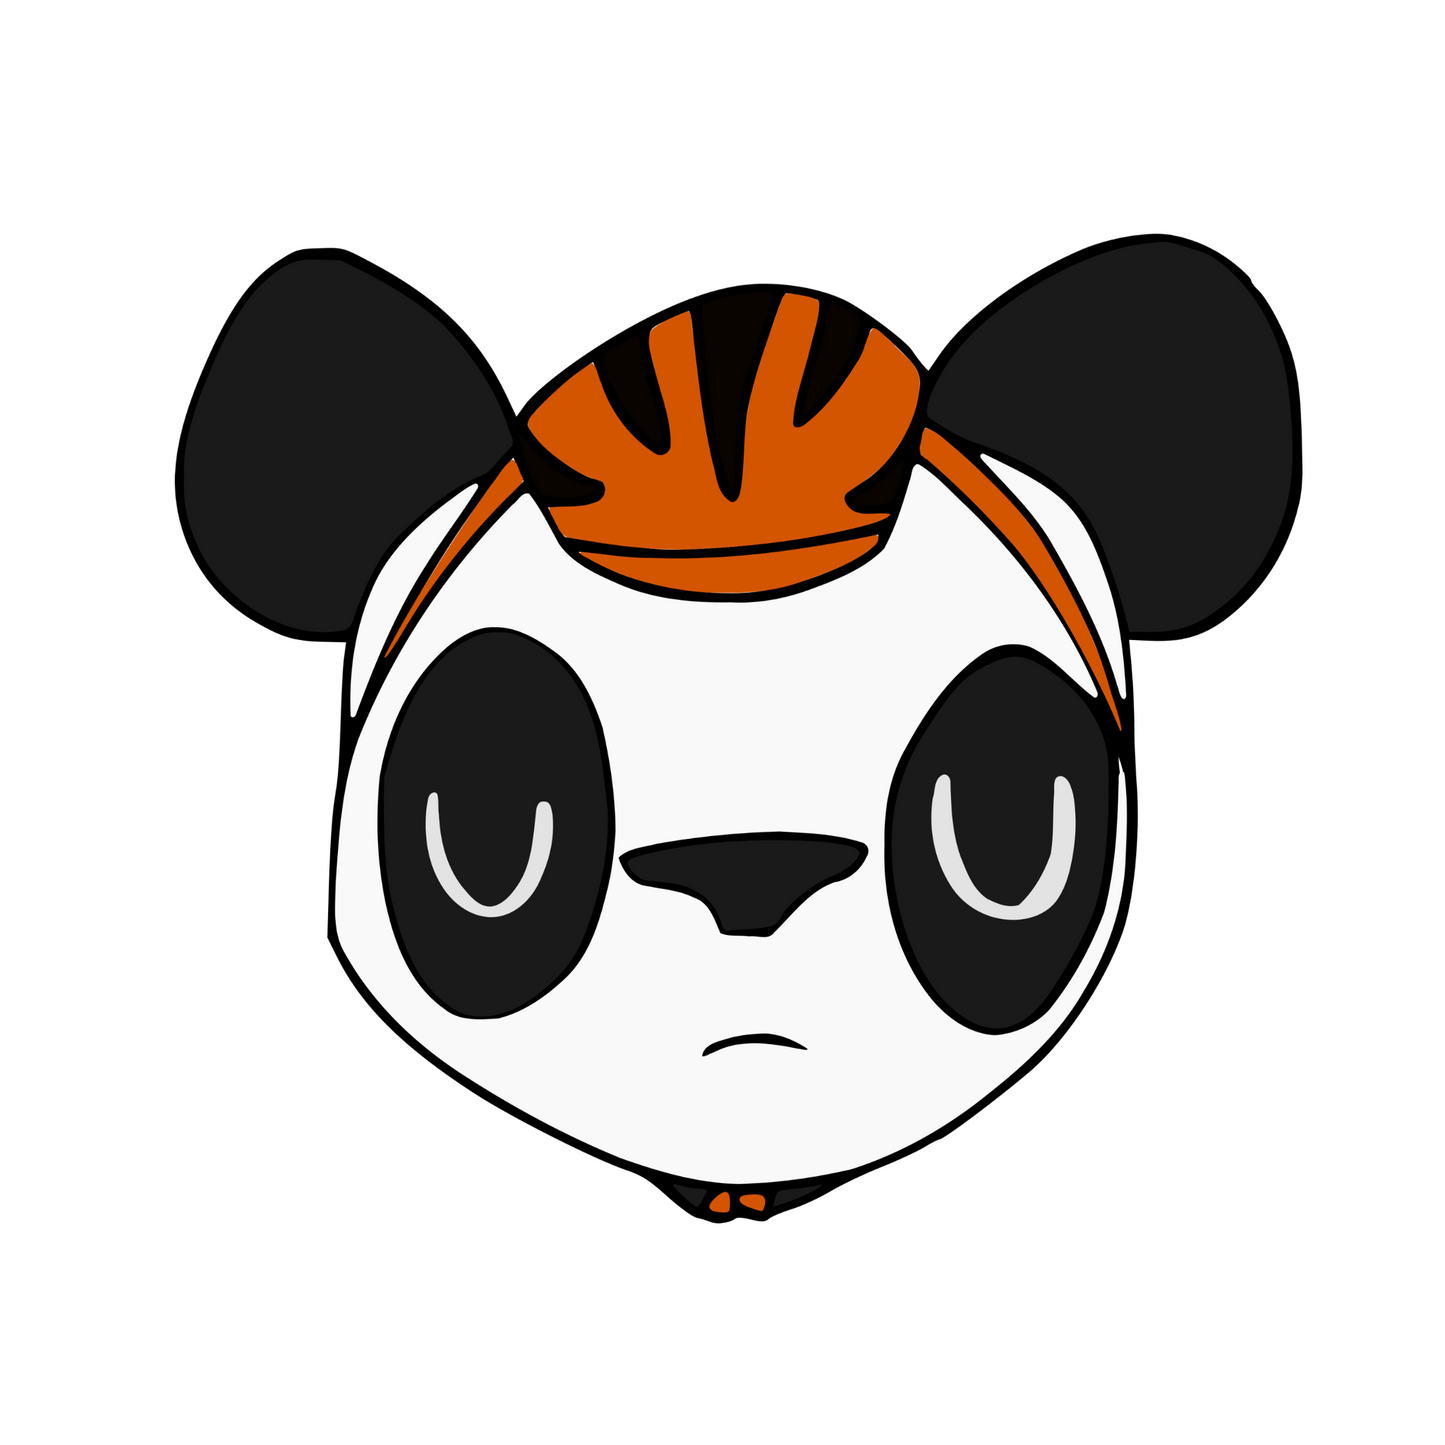 PANDA Sticker